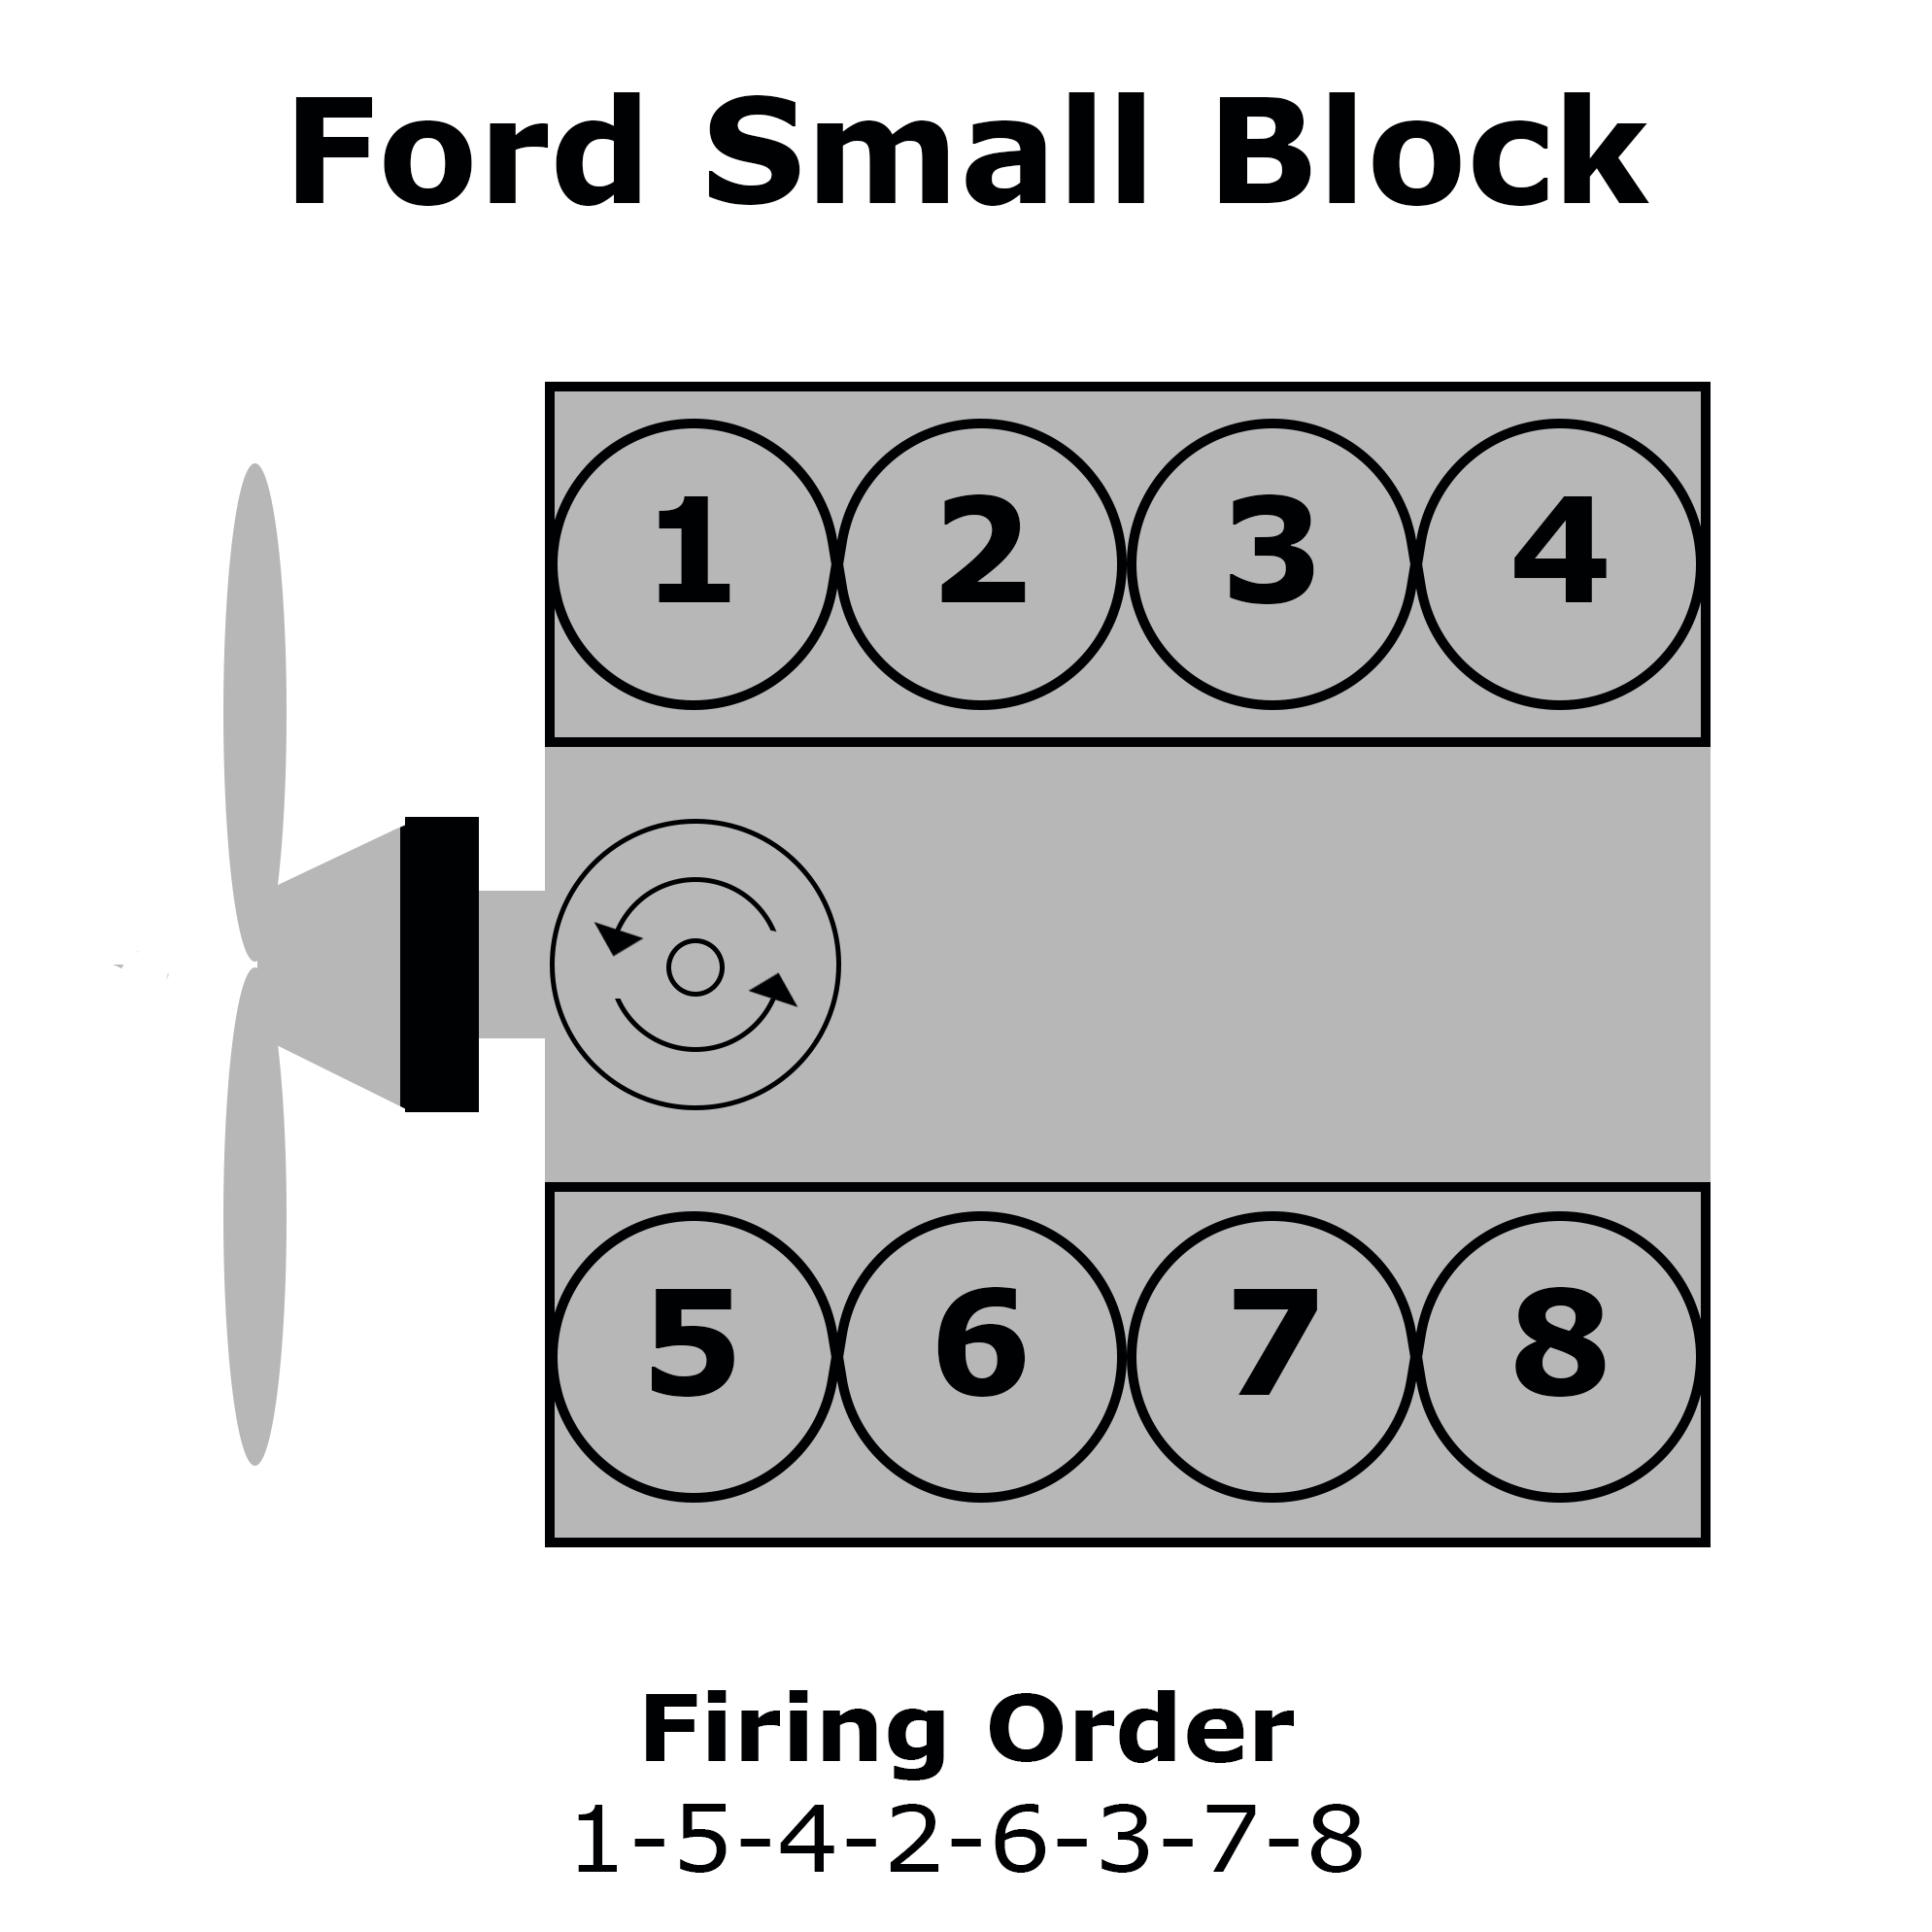 Ford Firing Order